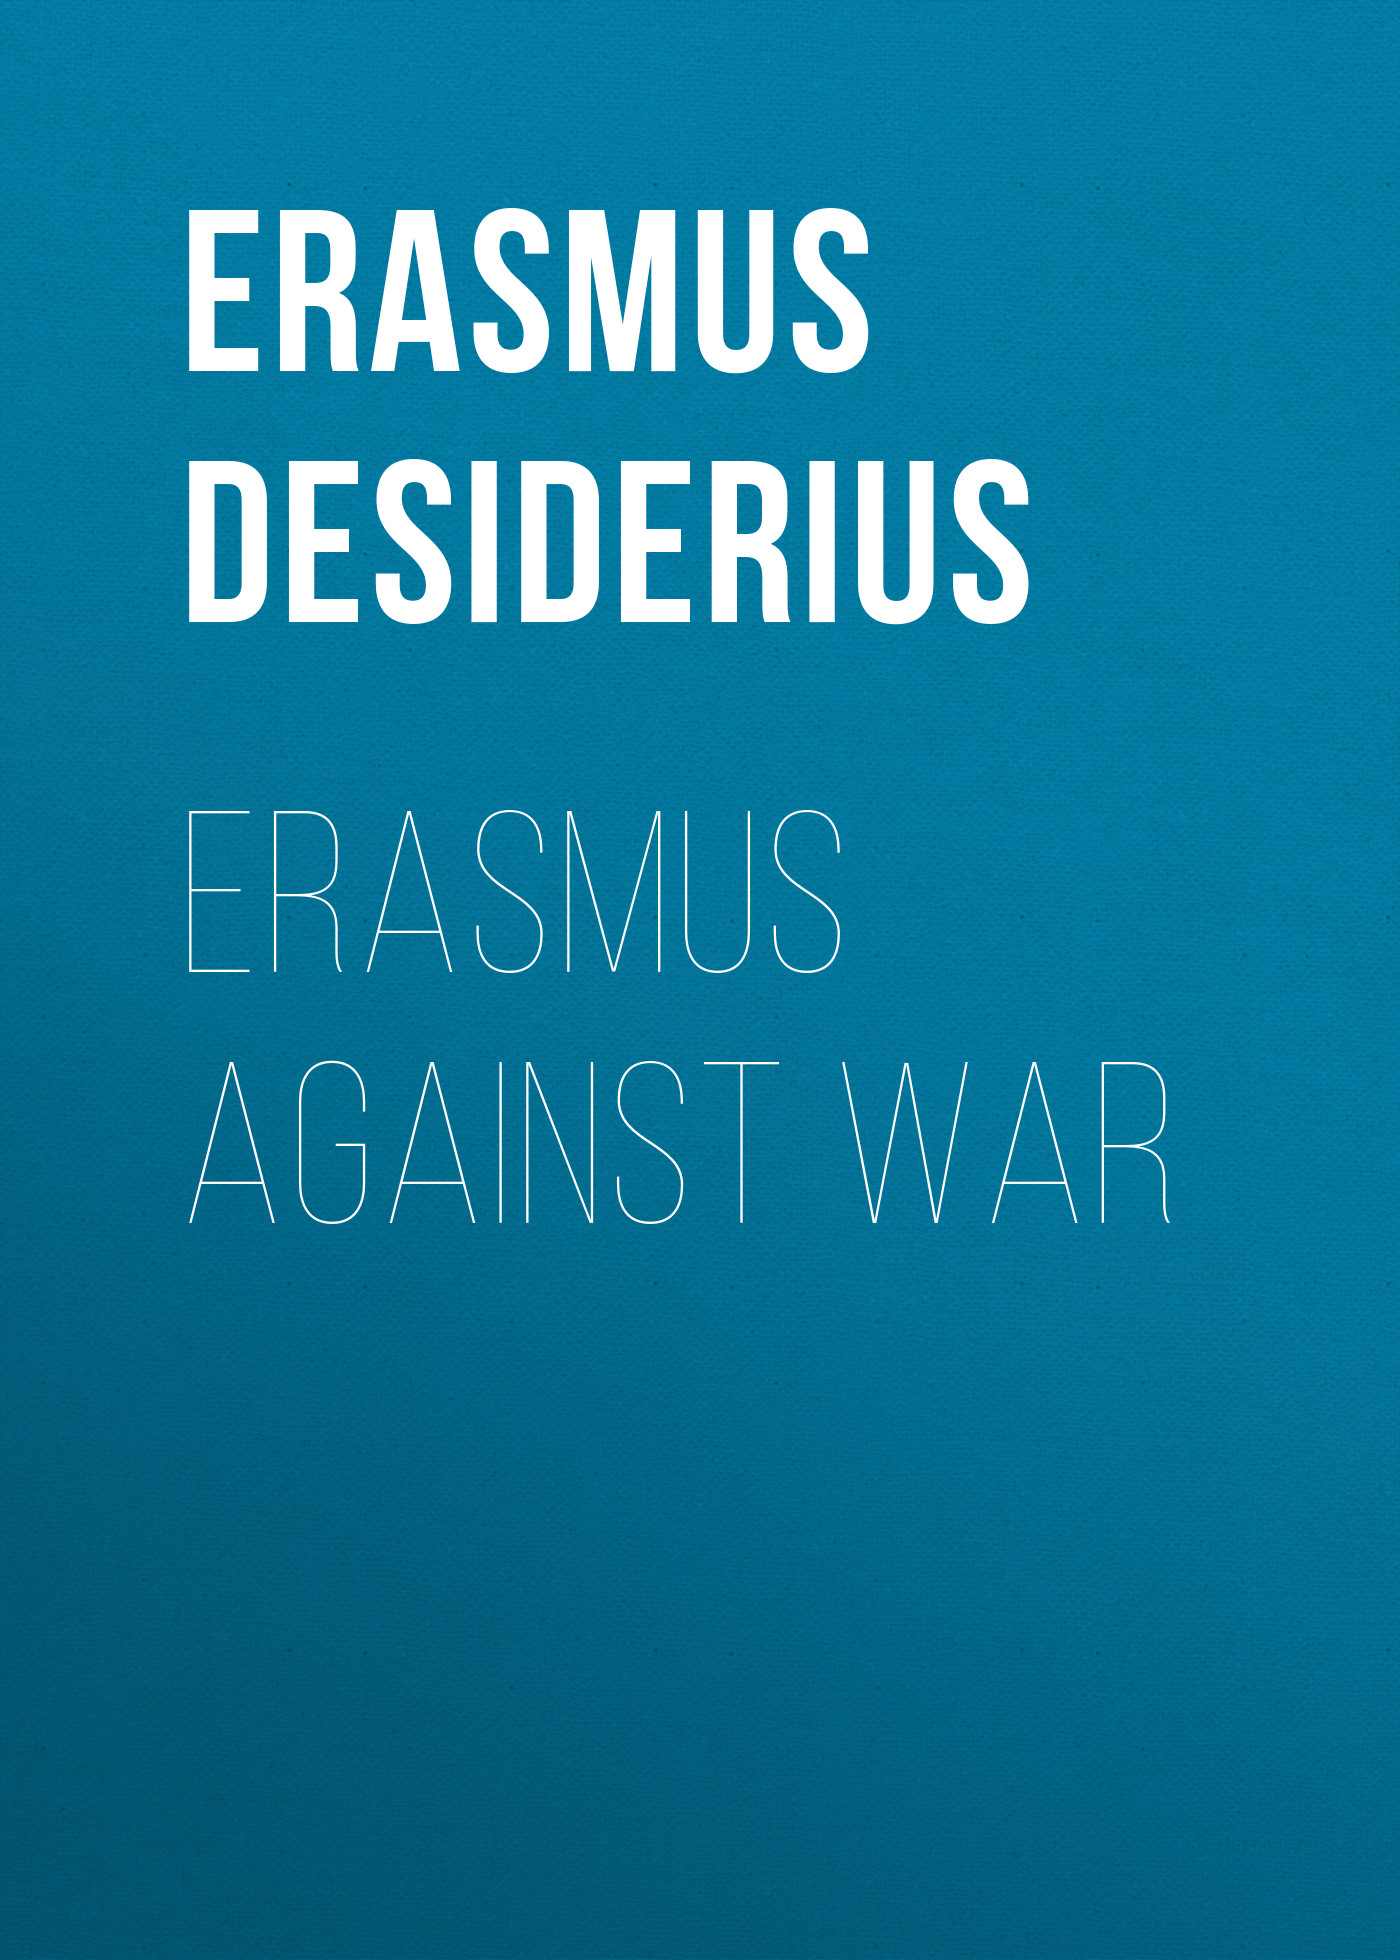 Книга Erasmus Against War из серии , созданная Desiderius Erasmus, может относится к жанру Зарубежная старинная литература, Зарубежная классика. Стоимость электронной книги Erasmus Against War с идентификатором 24713553 составляет 0 руб.